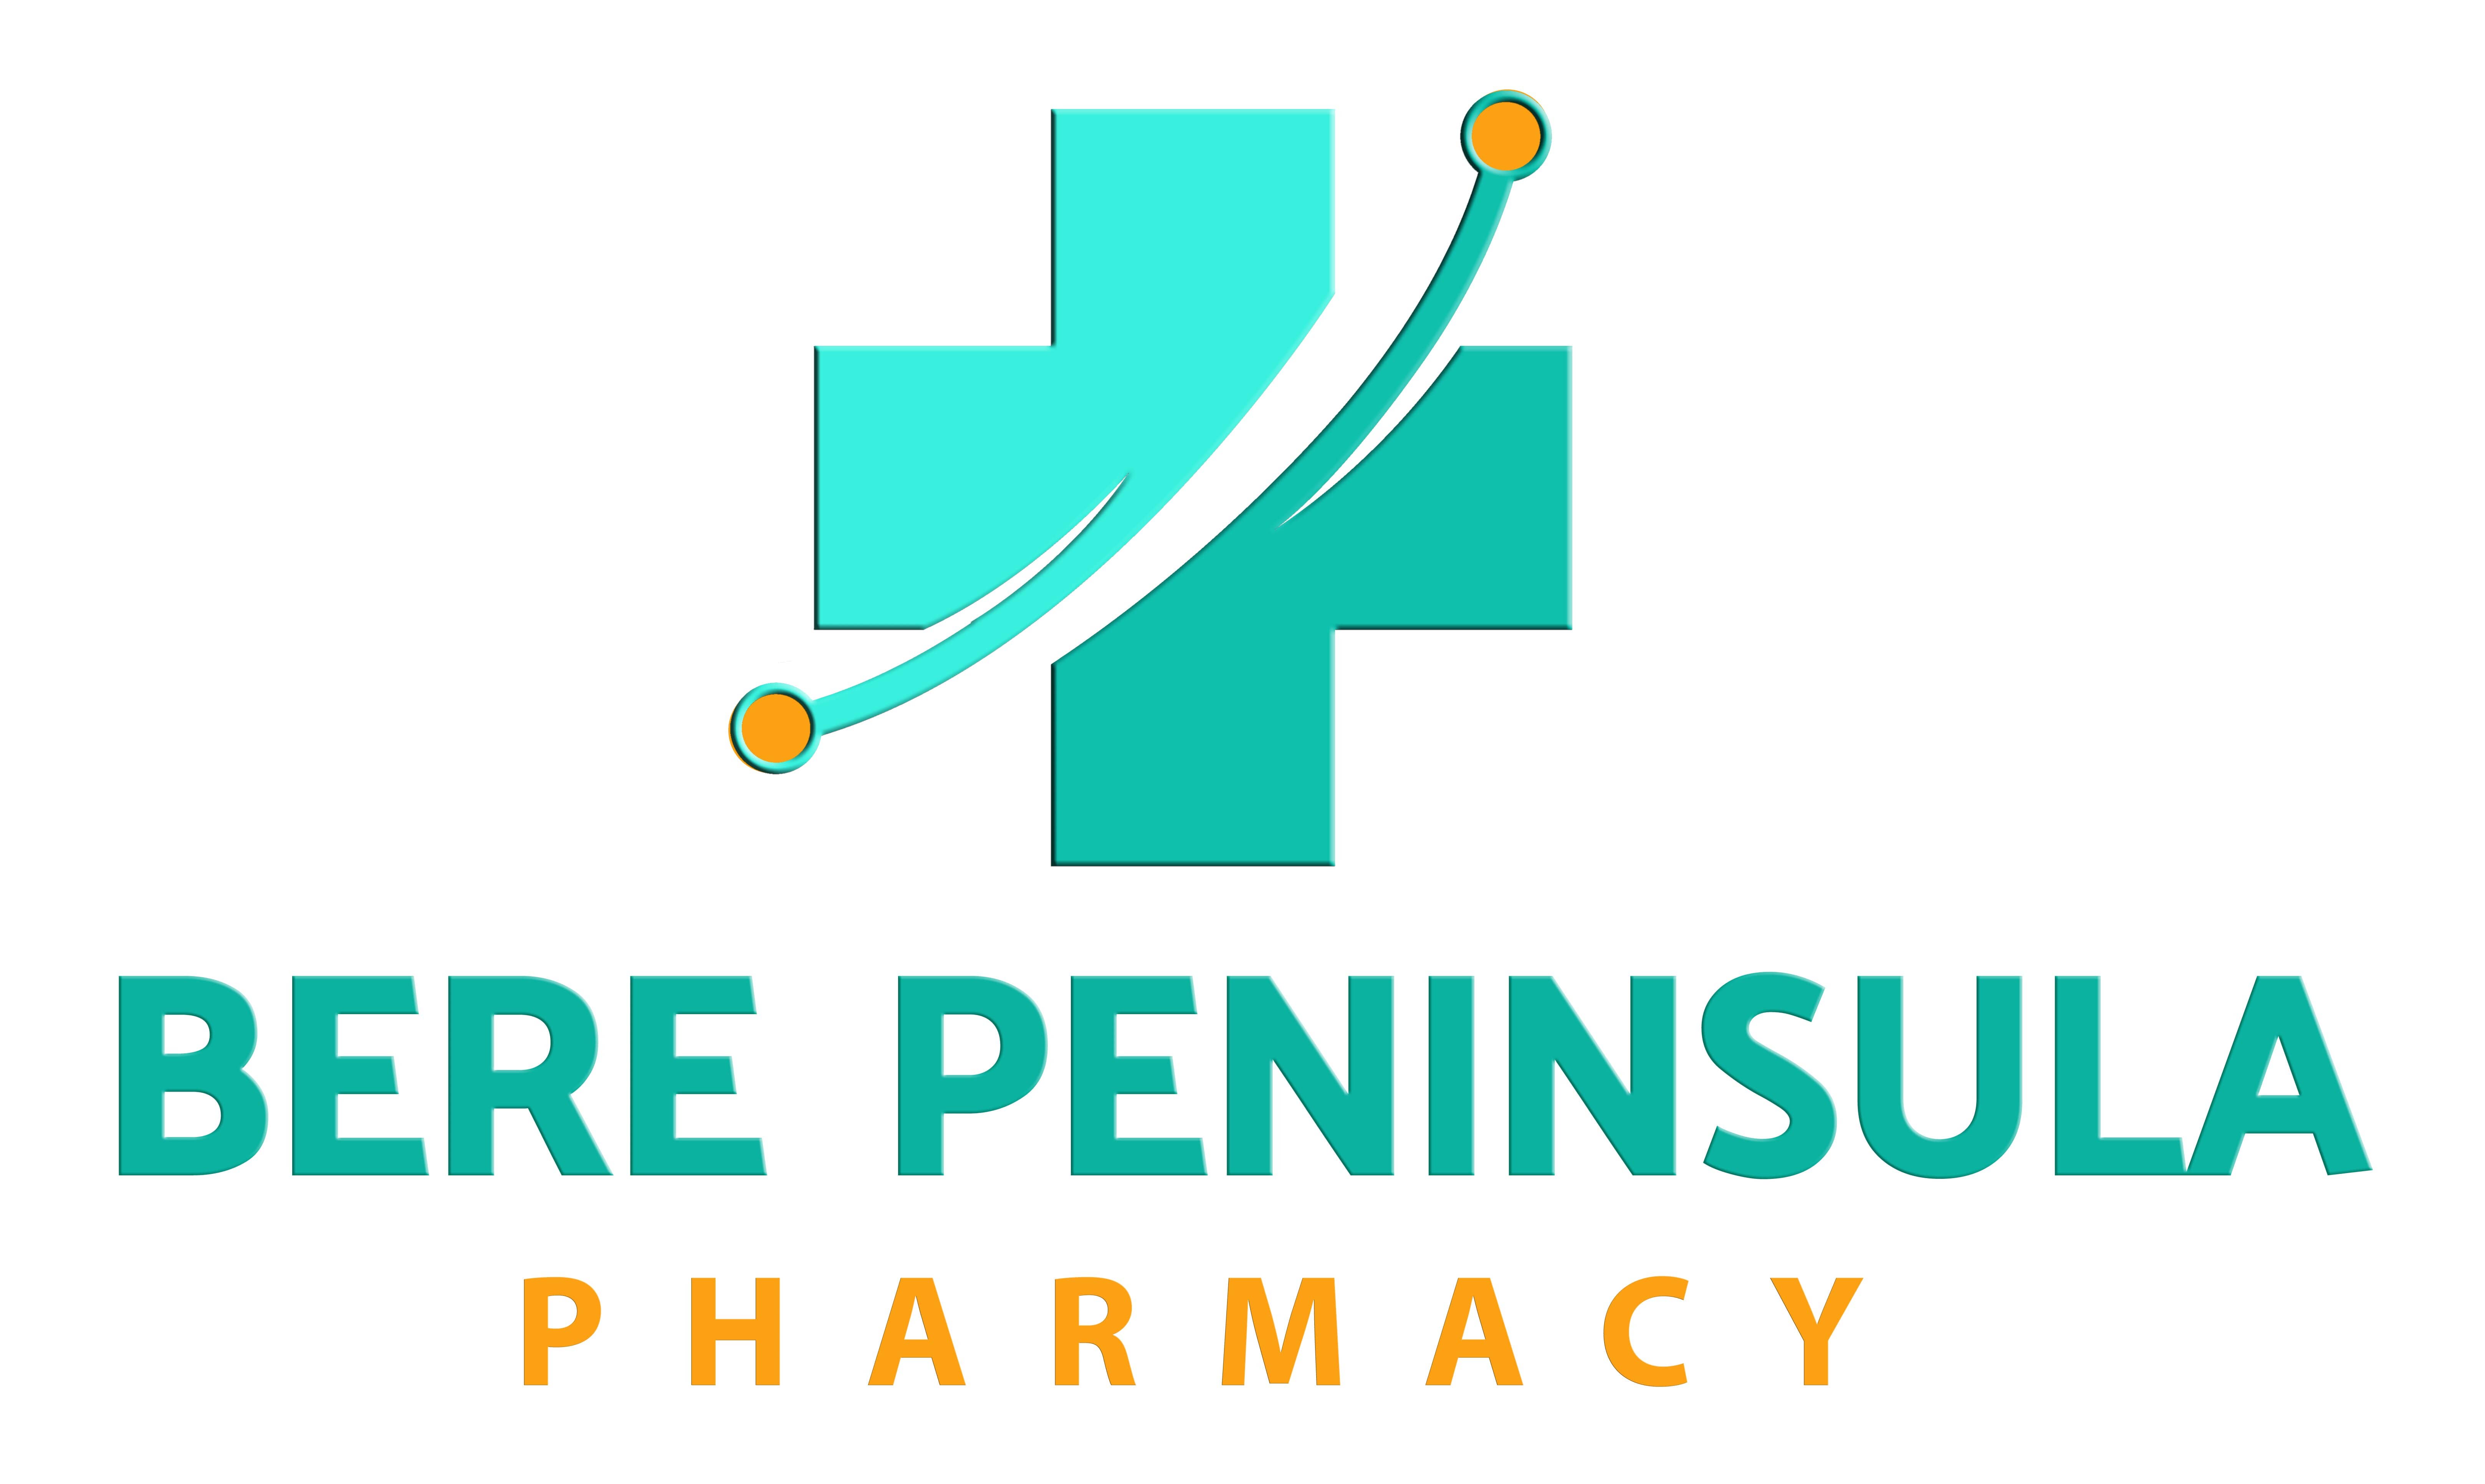 Bere Peninsula Pharmacy